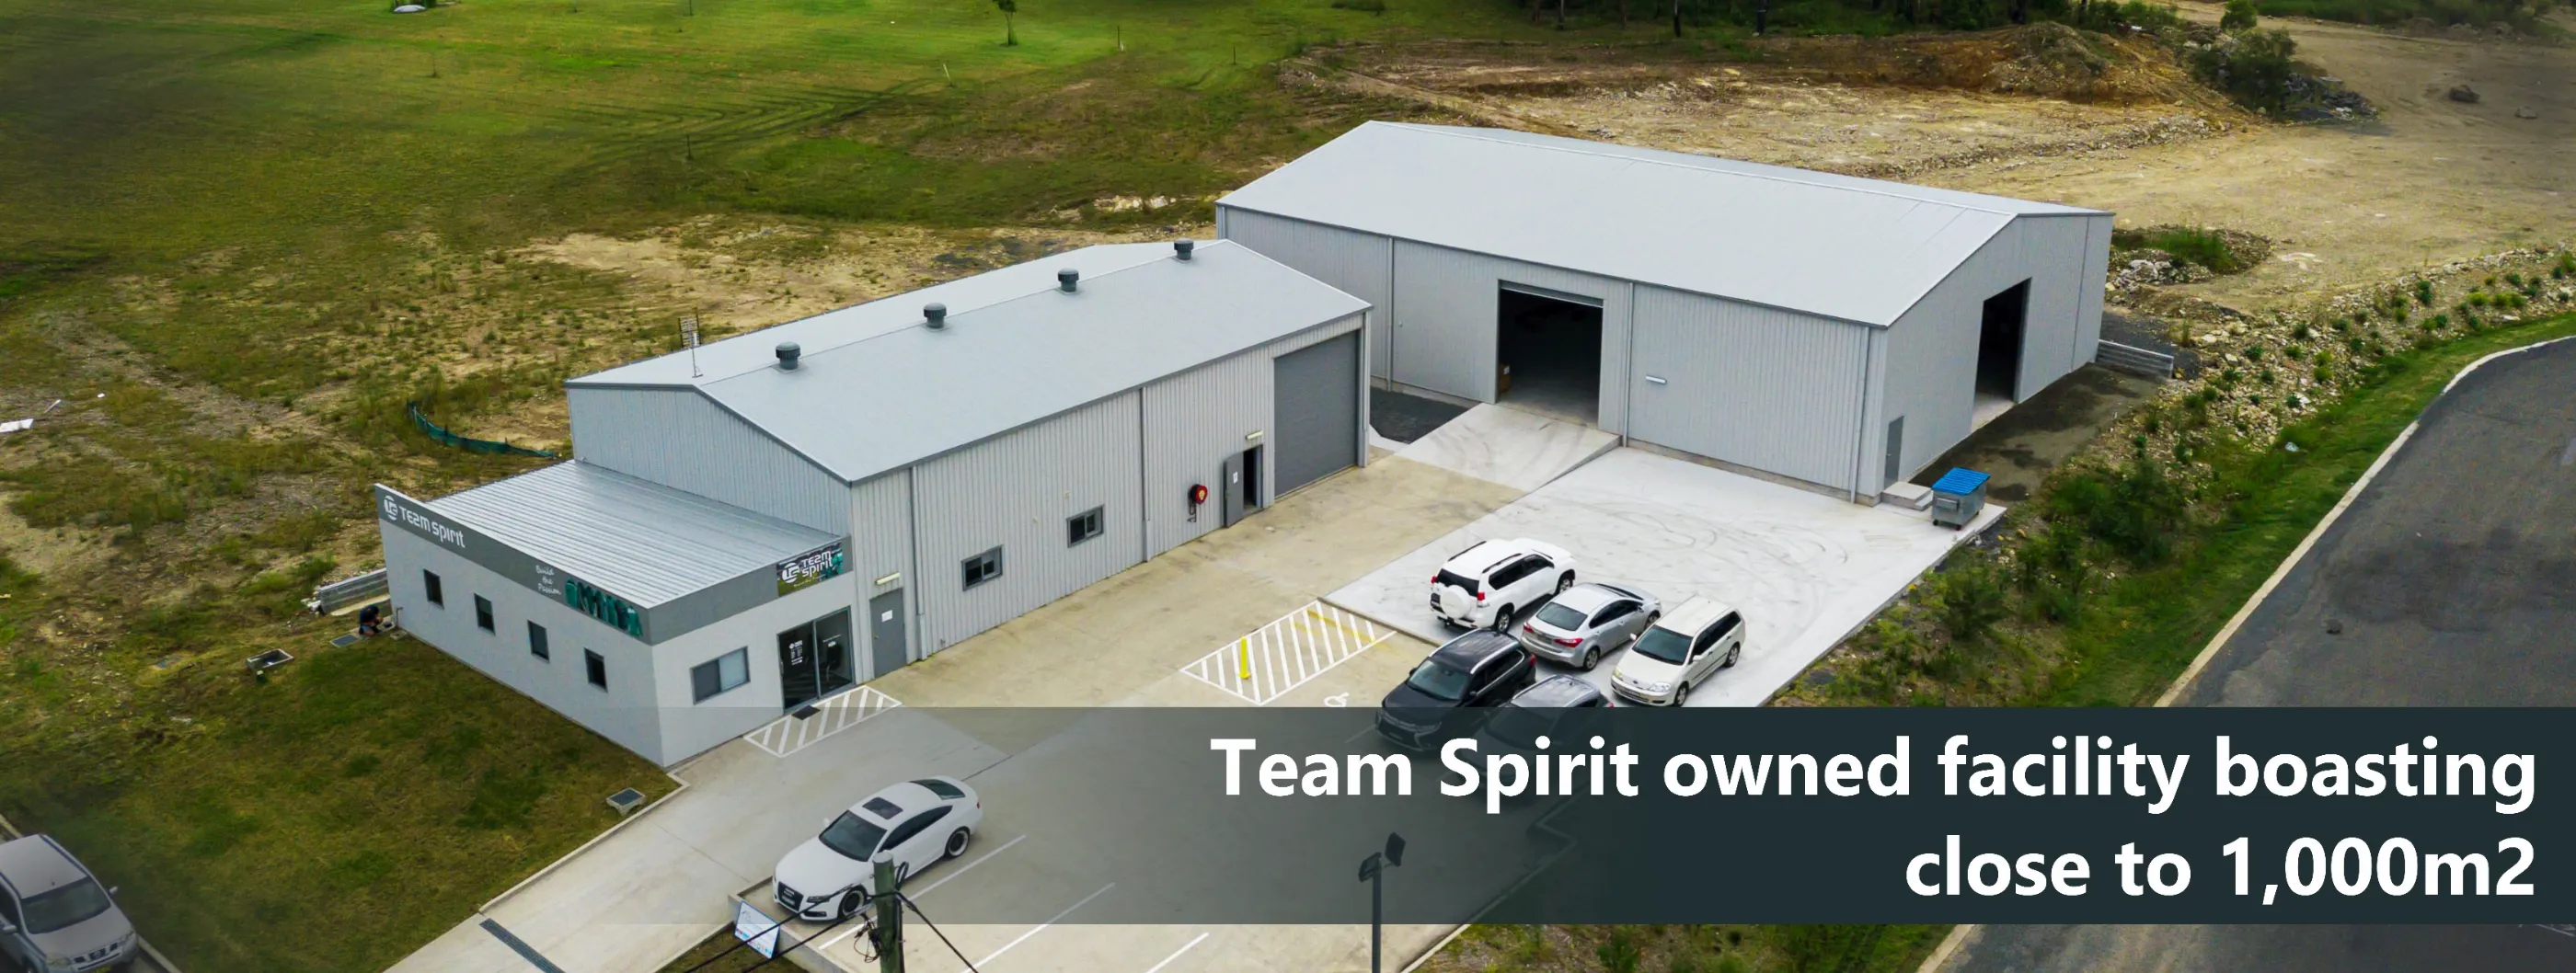 Team spirits Warehouse Australia